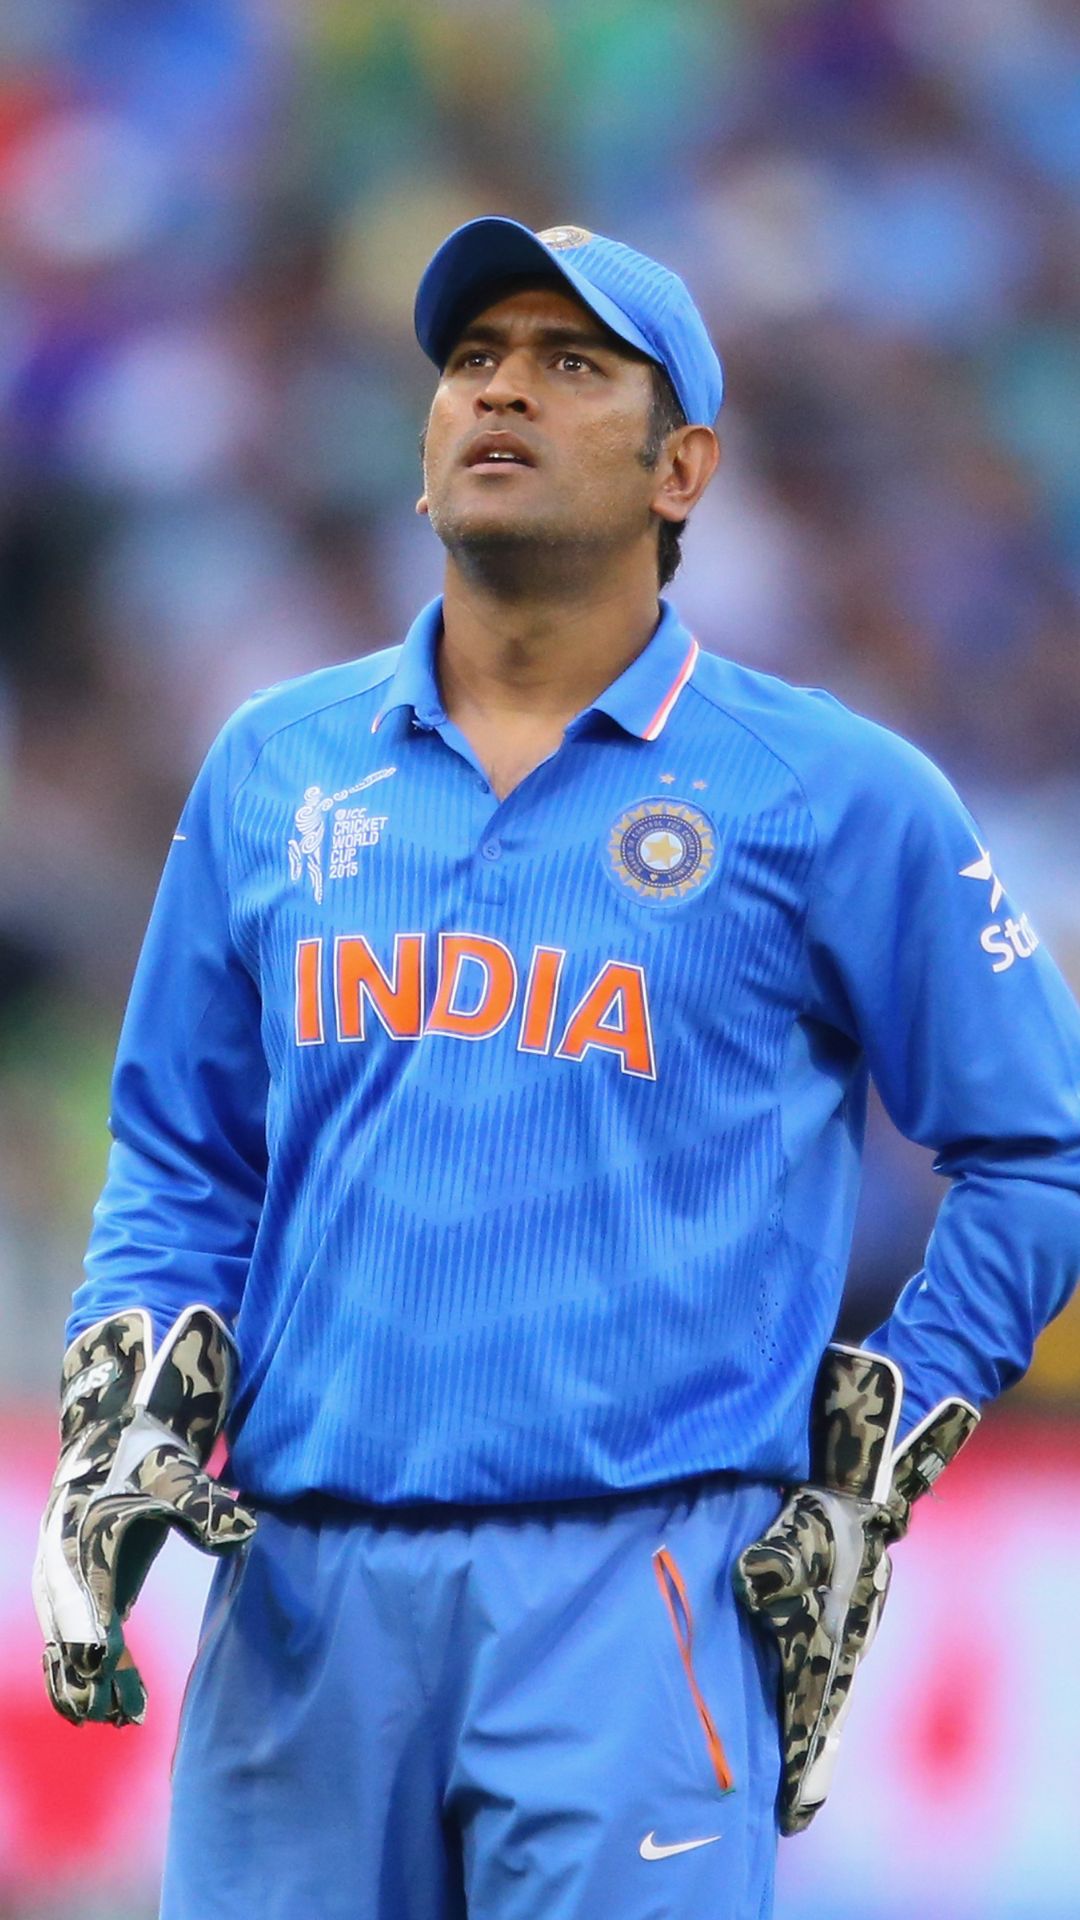 वनडे वर्ल्ड कप में सबसे ज्यादा मैच जीतने वाले कप्तान, लिस्ट में दो भारतीय शामिल